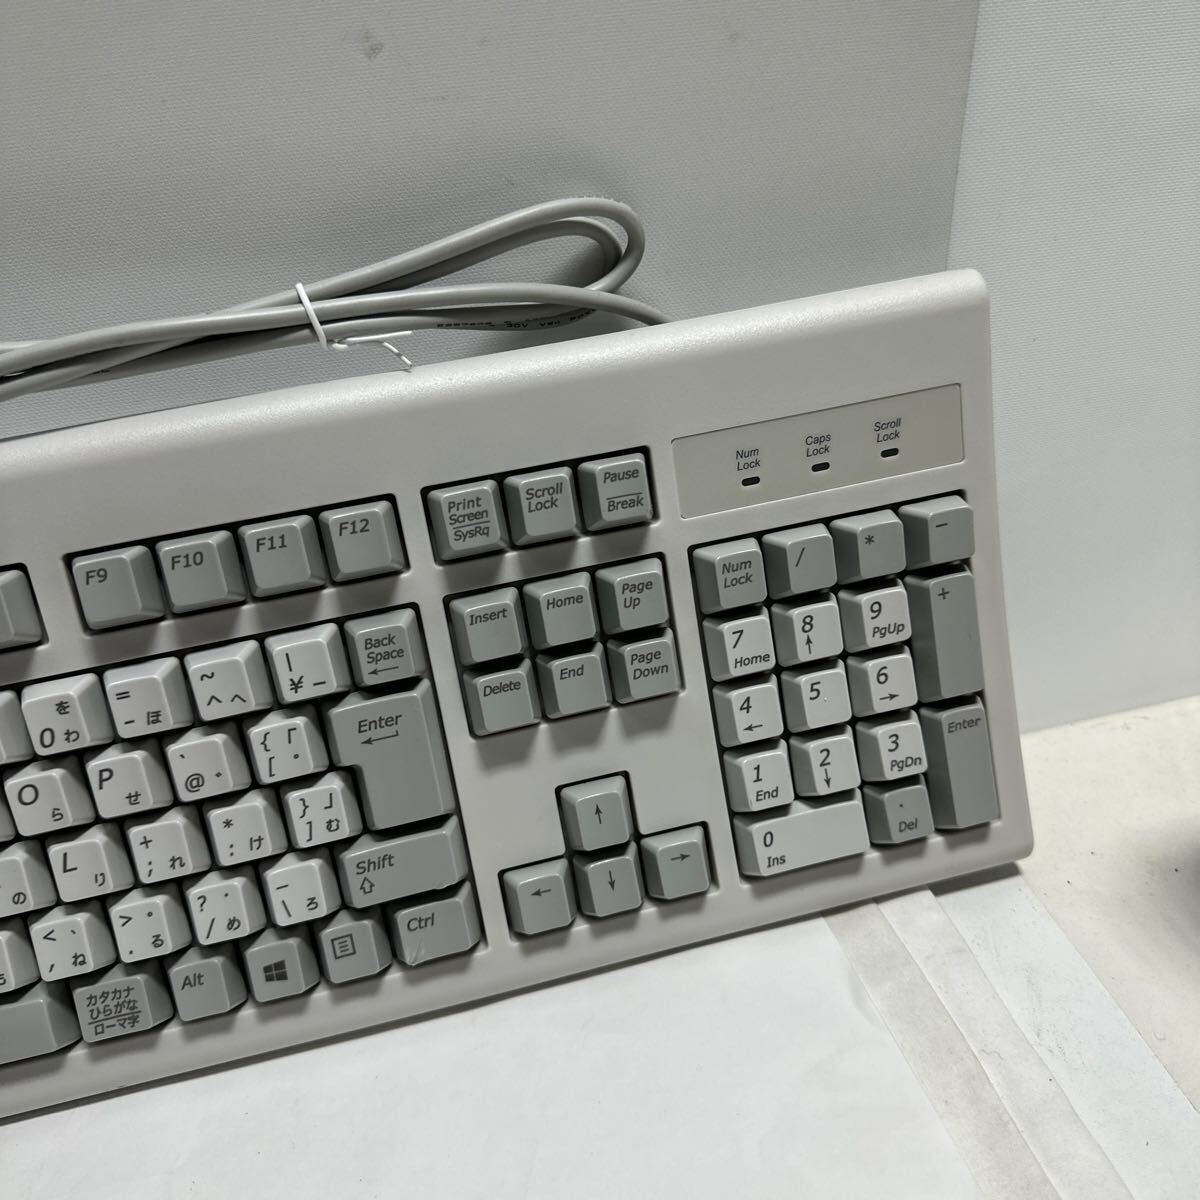 「2FU14」未使用 NEC PS/2キーボード KB-1776 未使用品(240426)の画像3